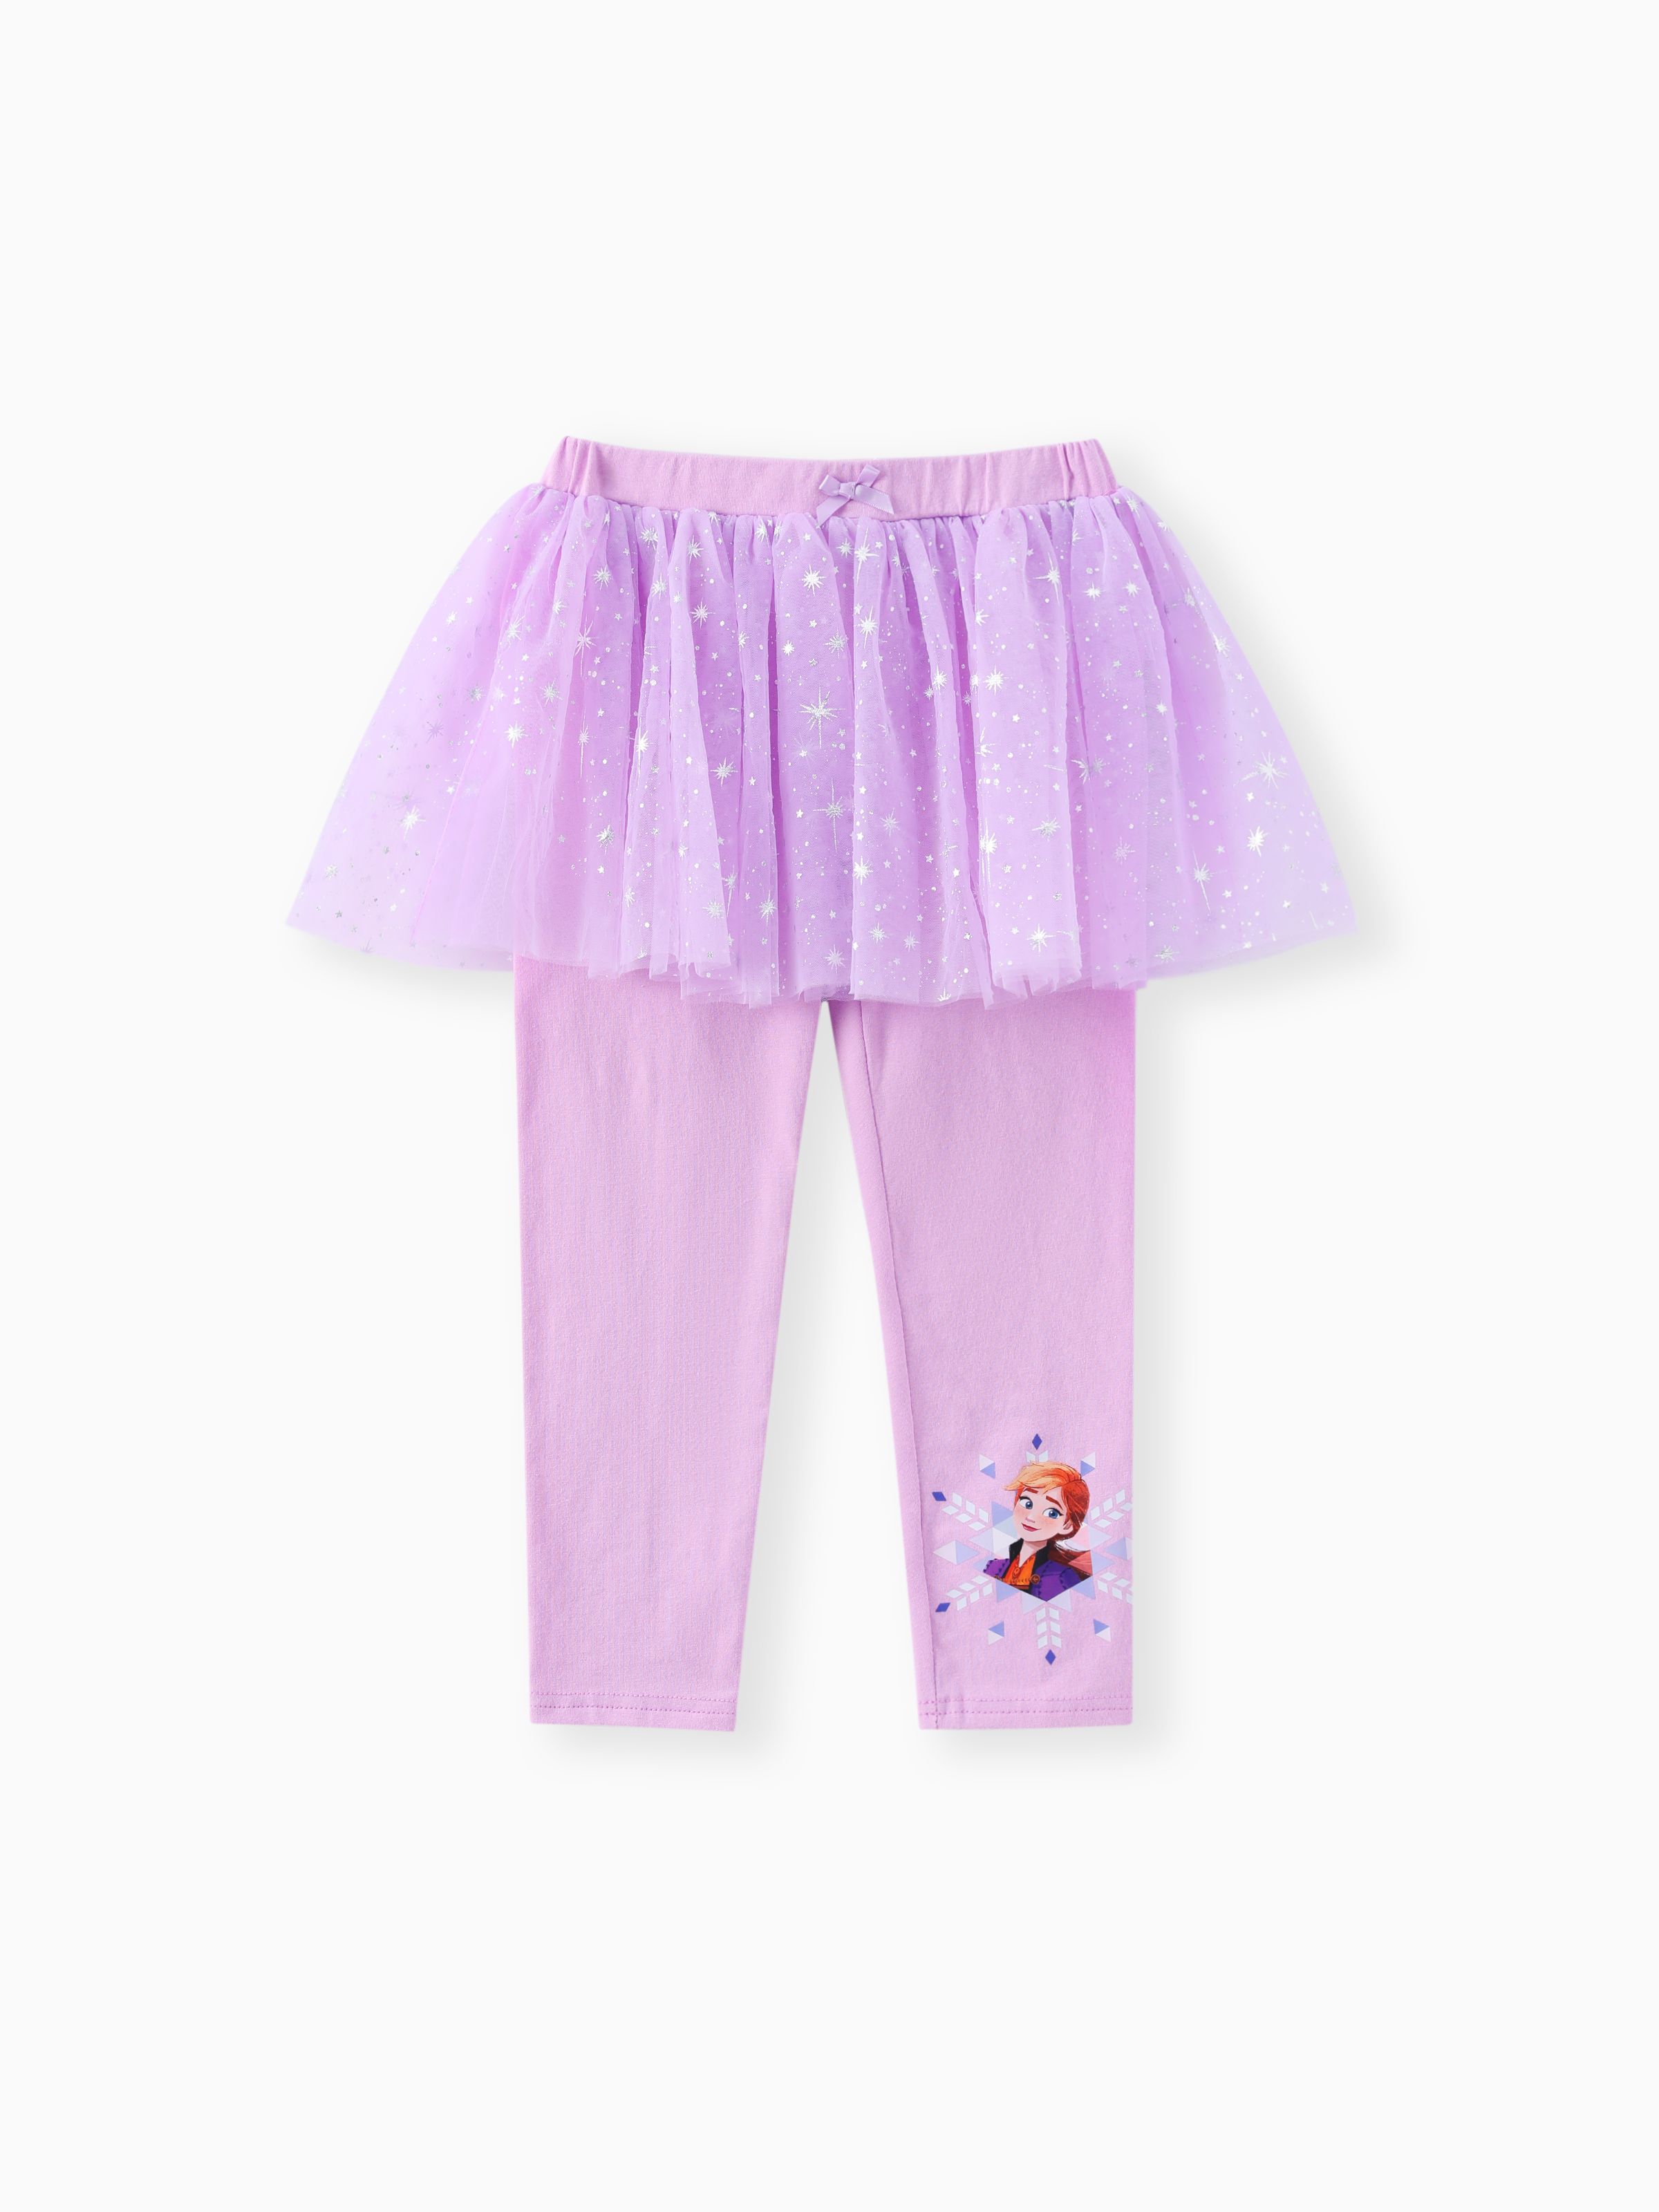 

Disney Frozen Toddler Girls 1pc Cotton Tulle Skirt Leggings